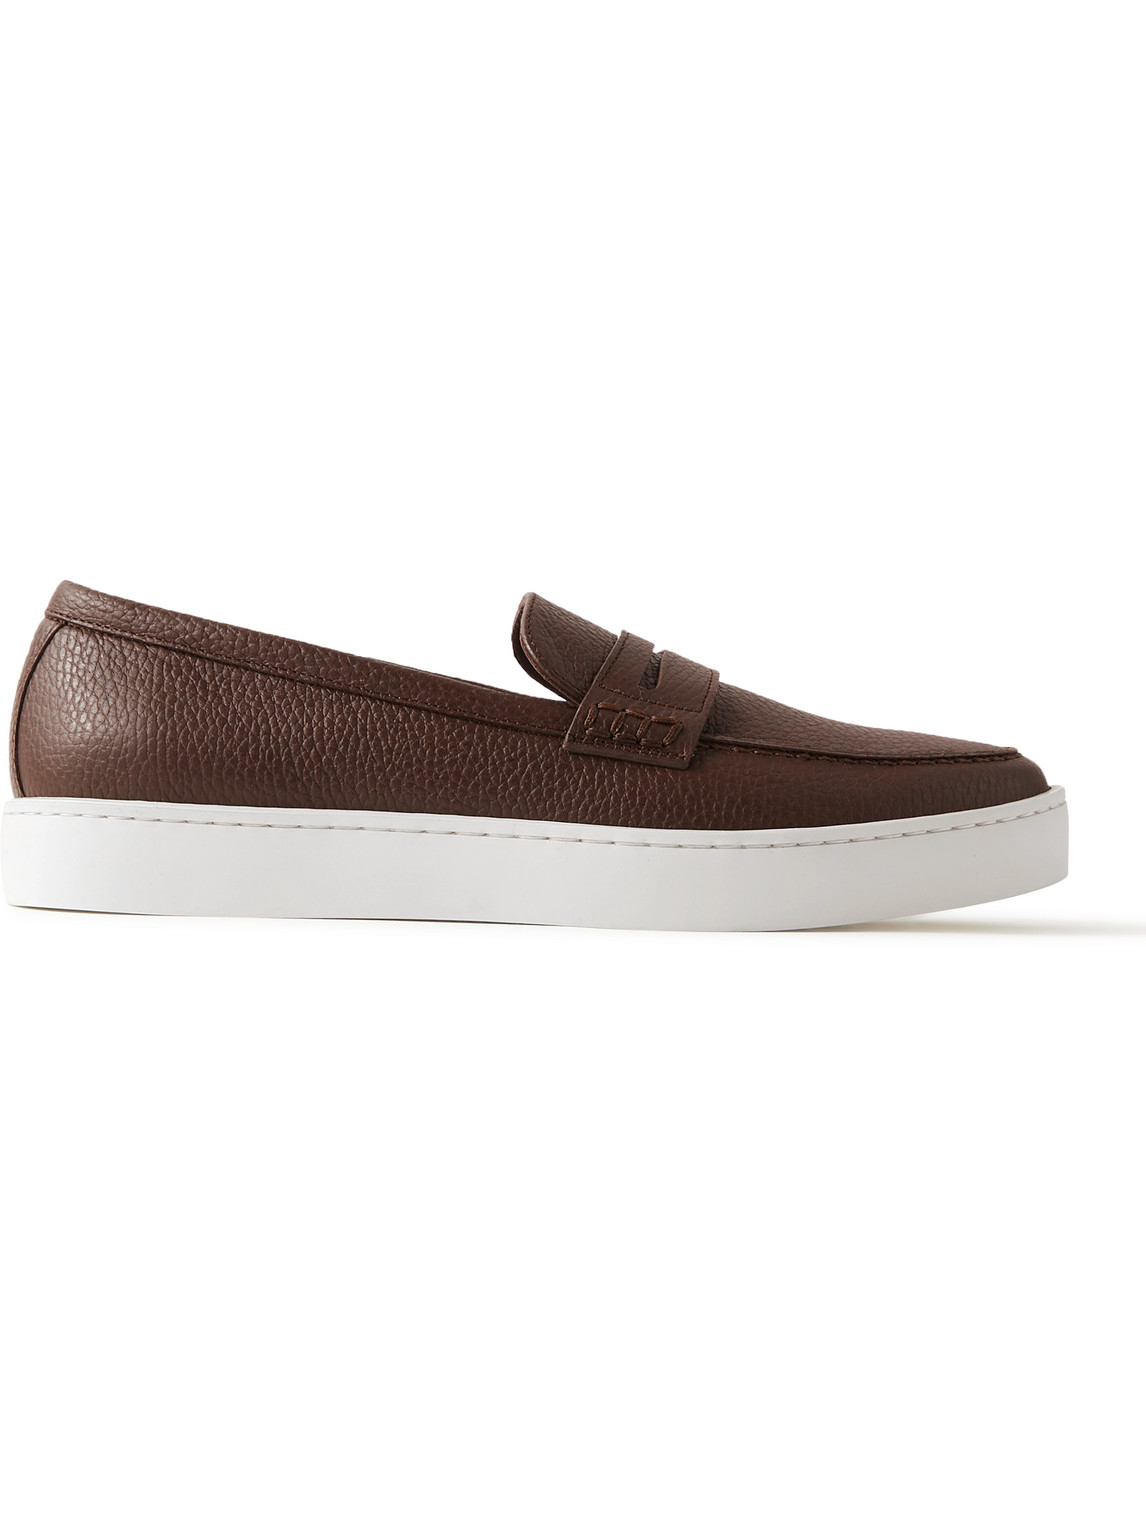 Manolo Blahnik Ellis Full-grain Leather Slip-on Sneakers In Brown